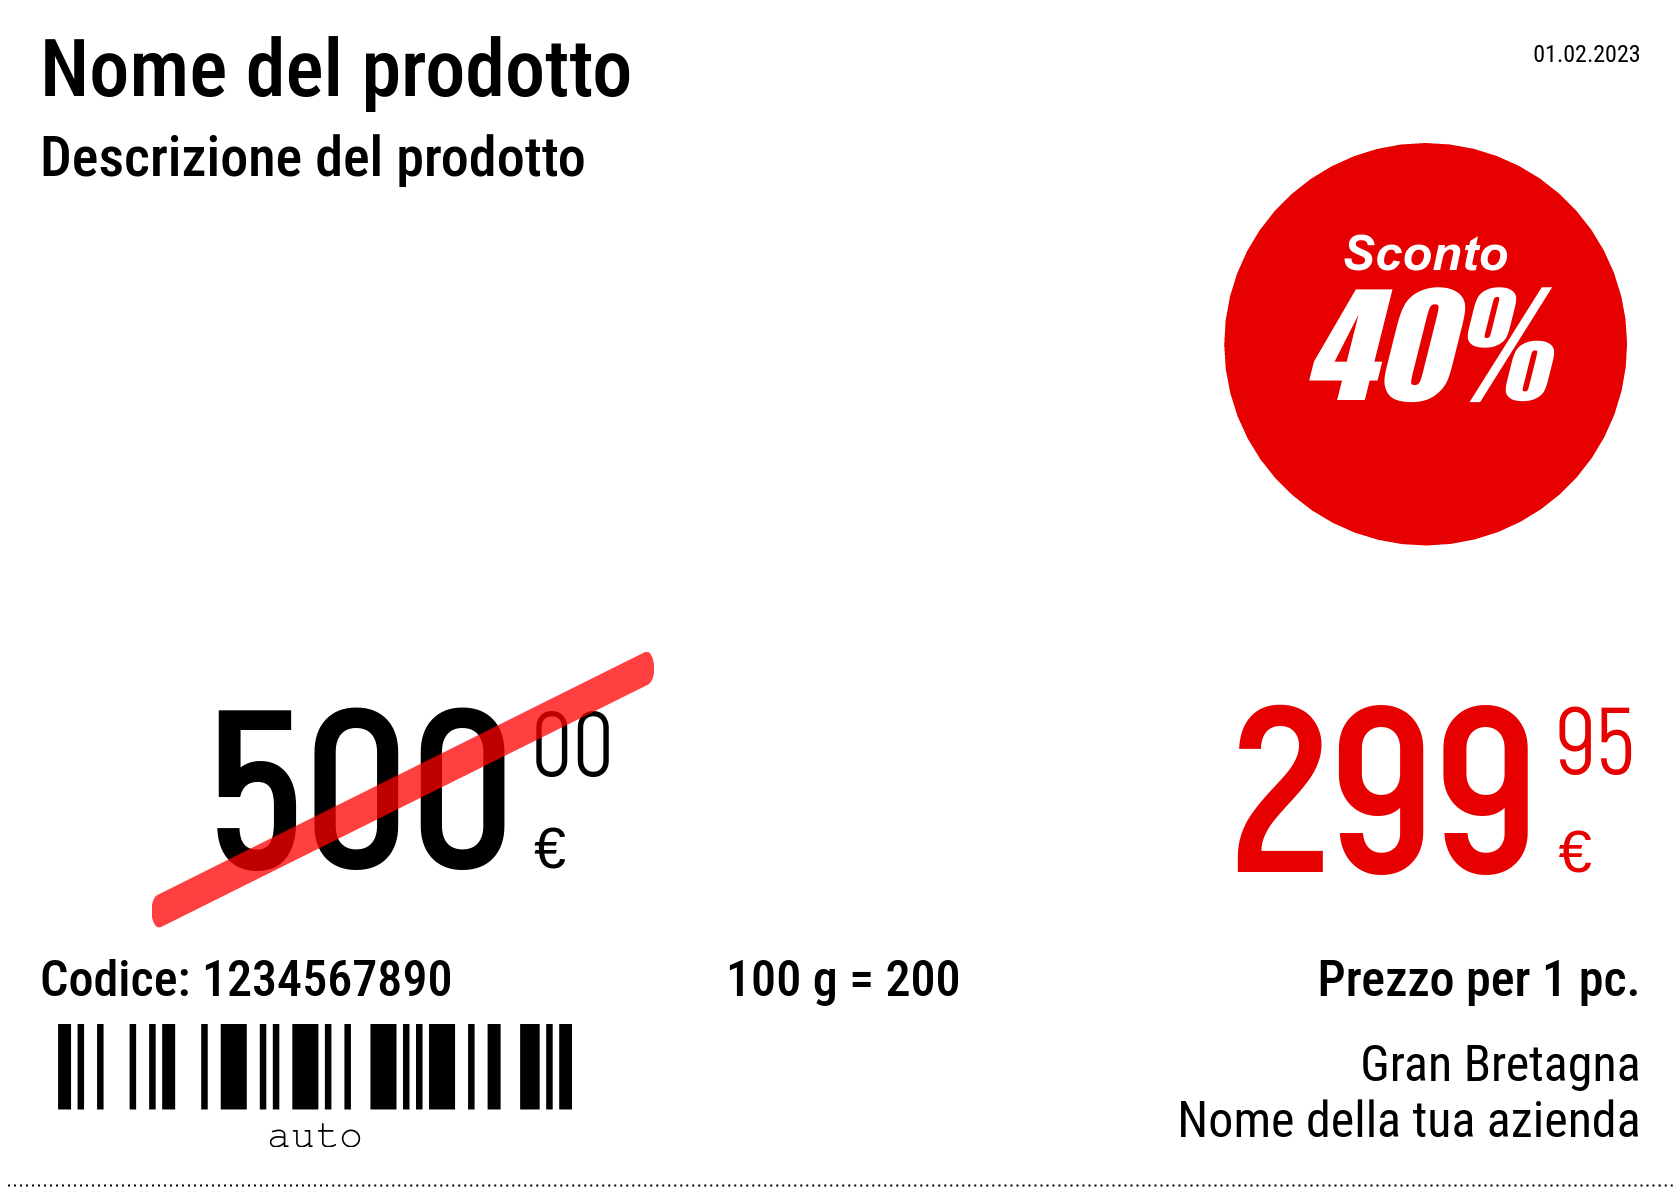 Prezzo Nuovo / A5 (mezzo foglio A4) / Promozionale 4